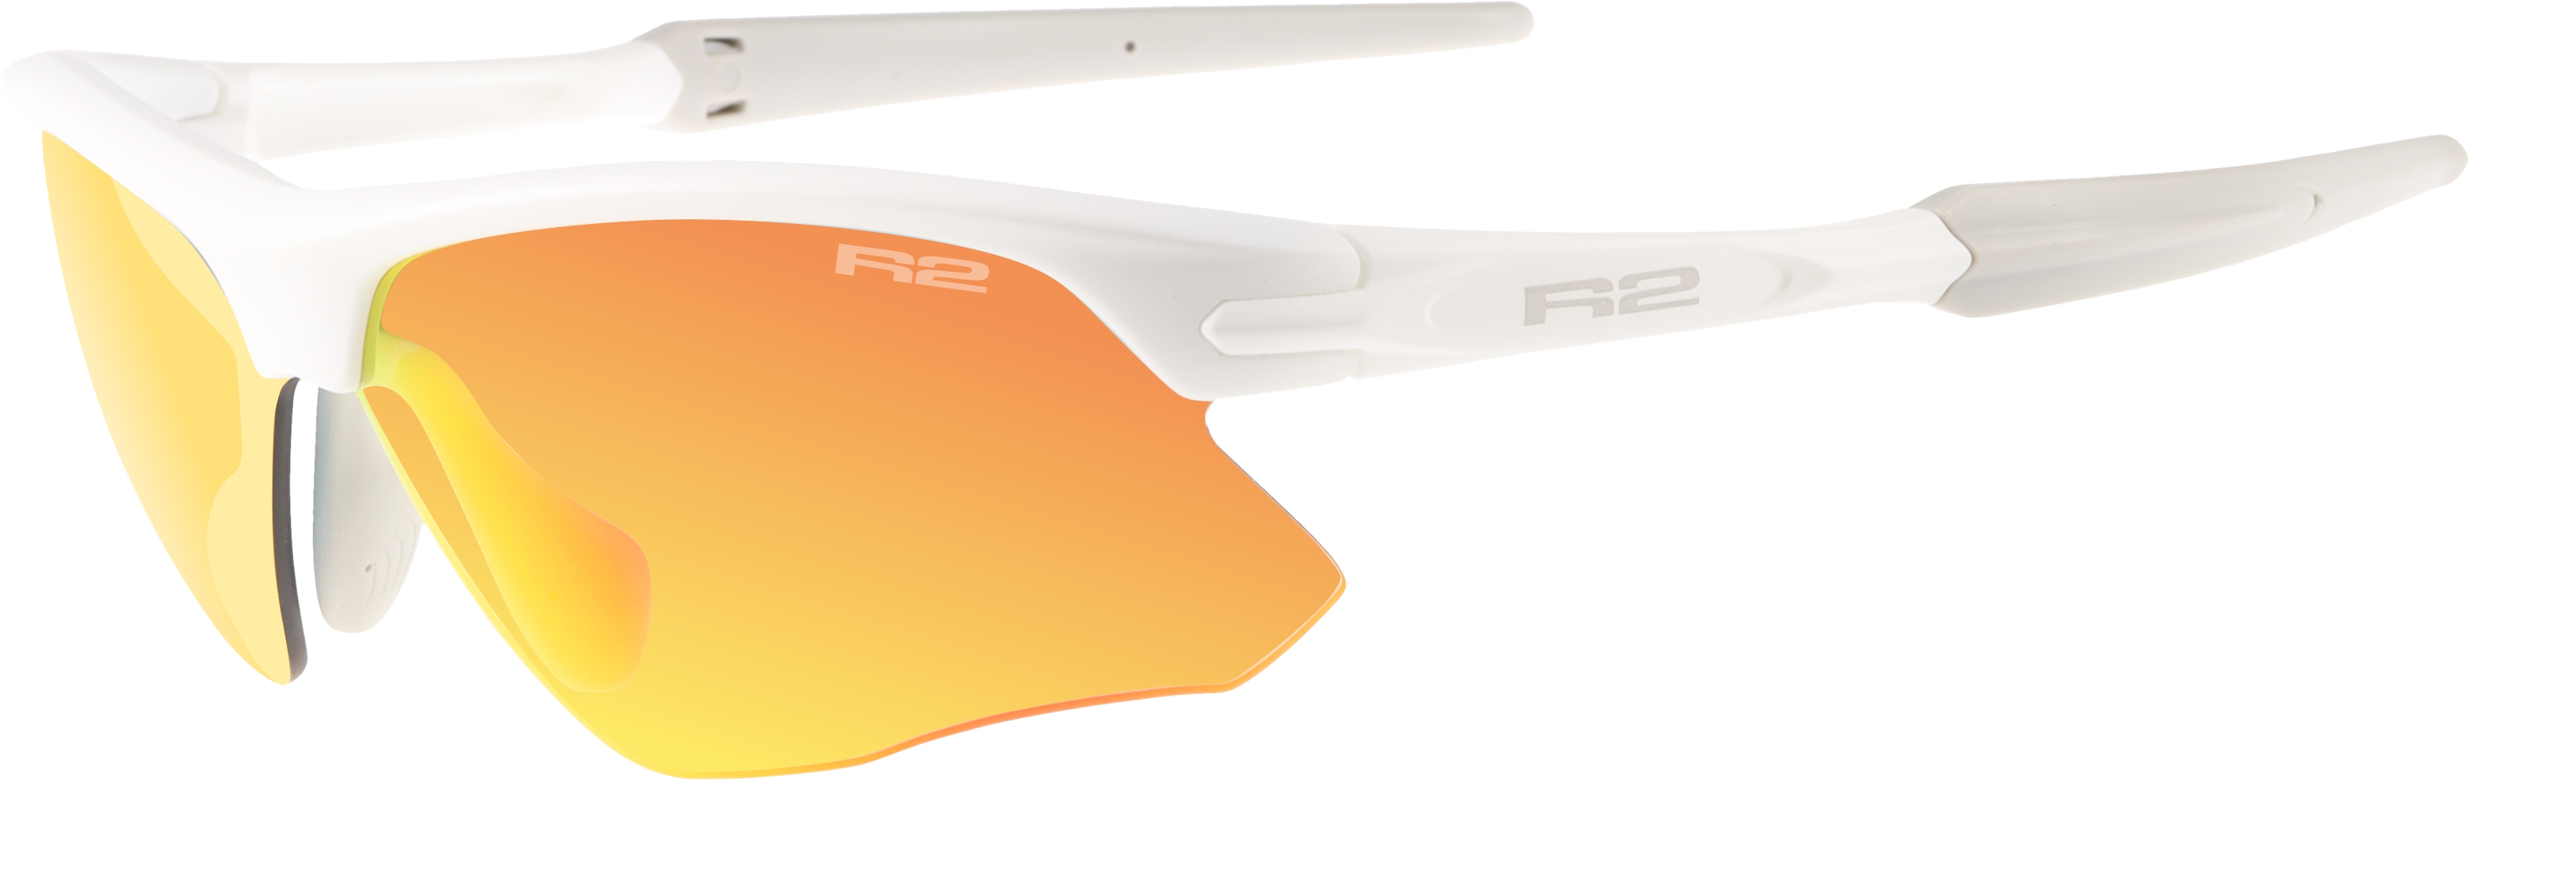 Sport sunglasses R2 KICK AT109G XS